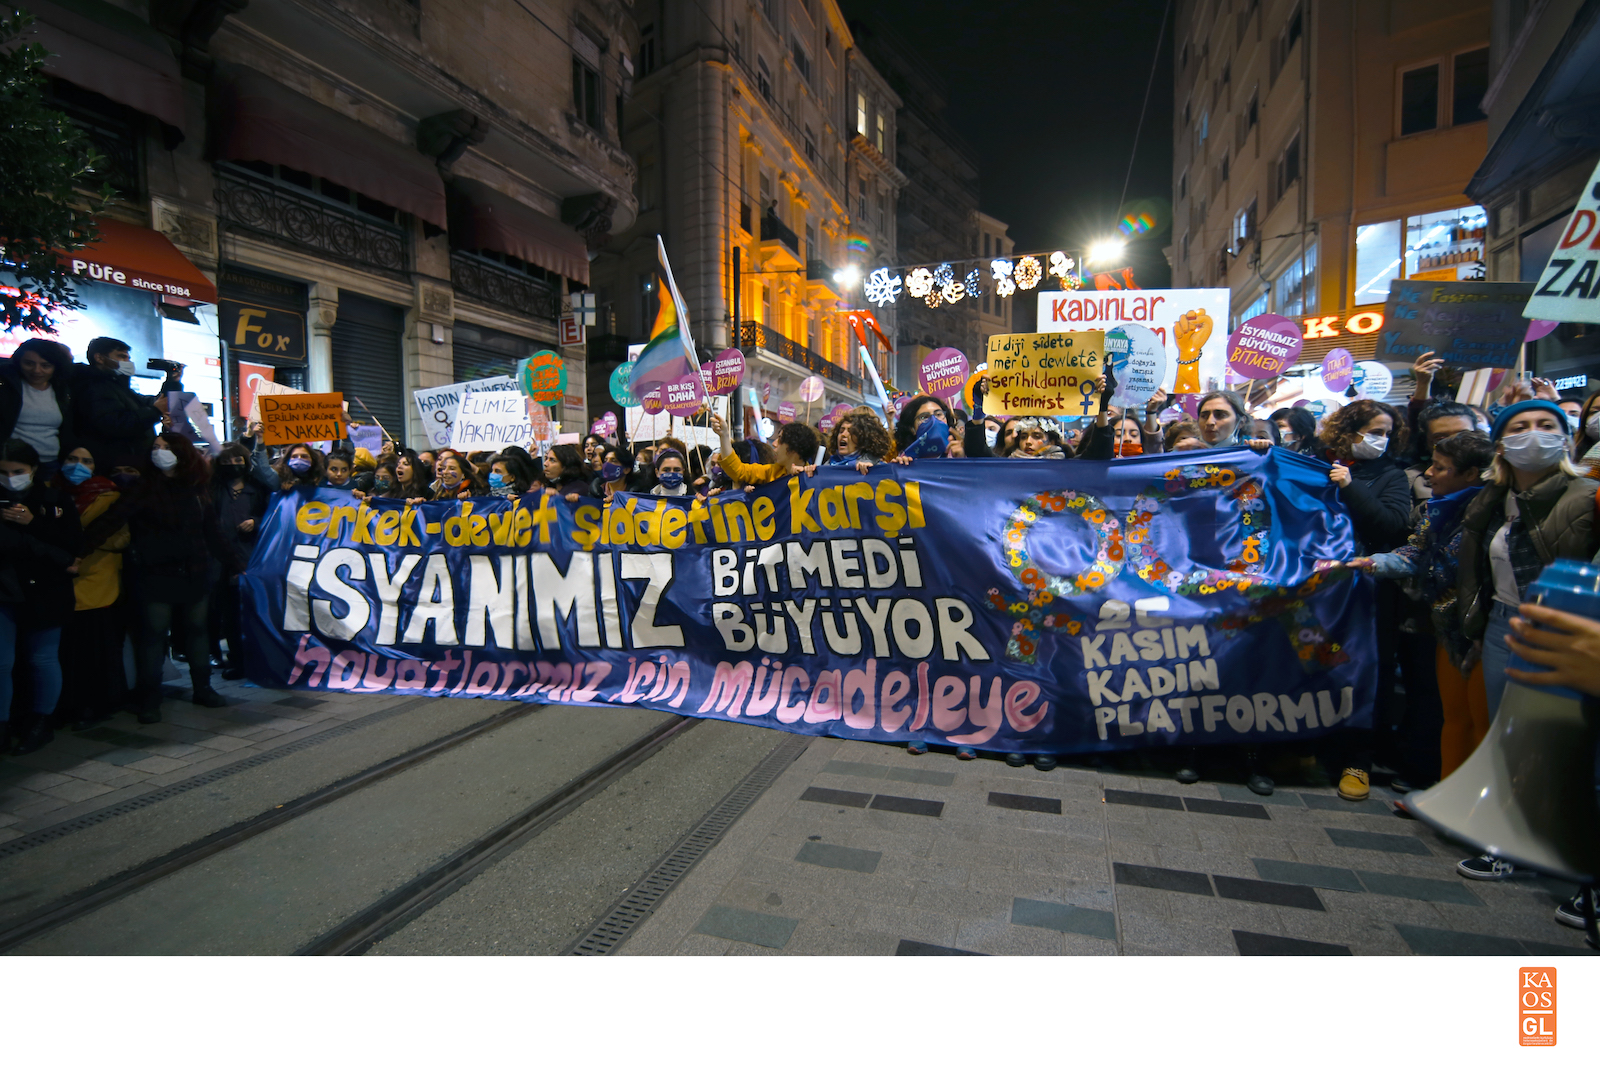 İstanbul’da 25 Kasım: Gücümüz birbirimizde! Kaos GL - LGBTİ+ Haber Portalı